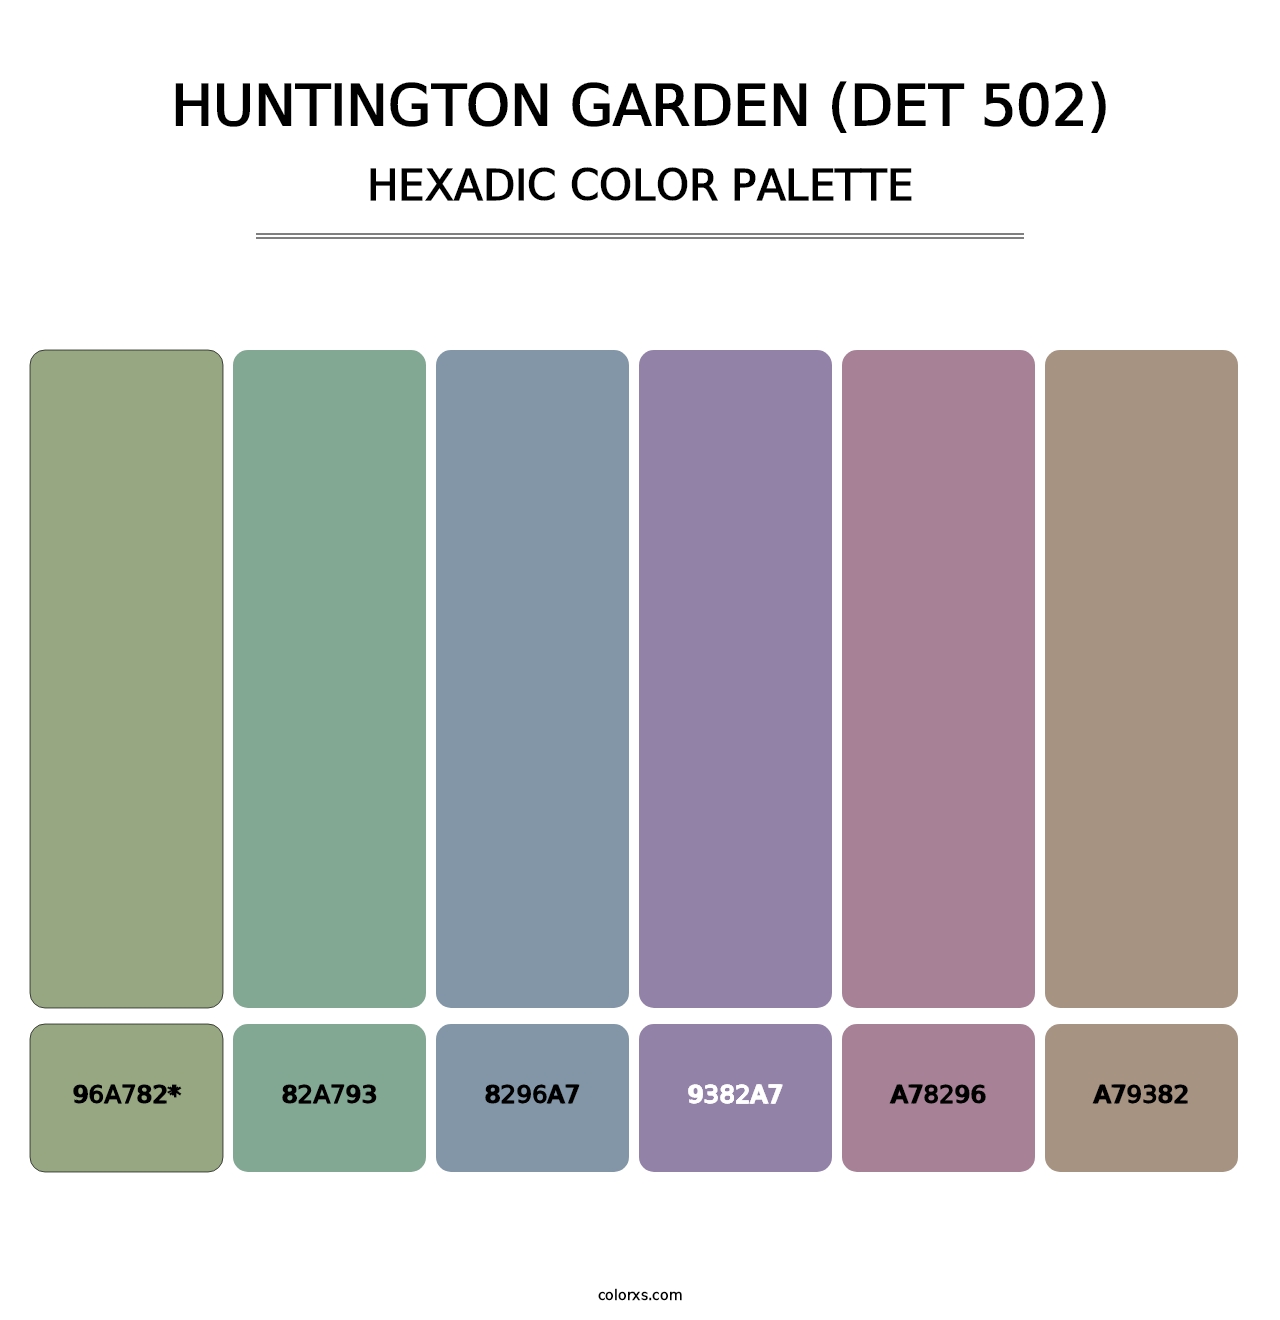 Huntington Garden (DET 502) - Hexadic Color Palette